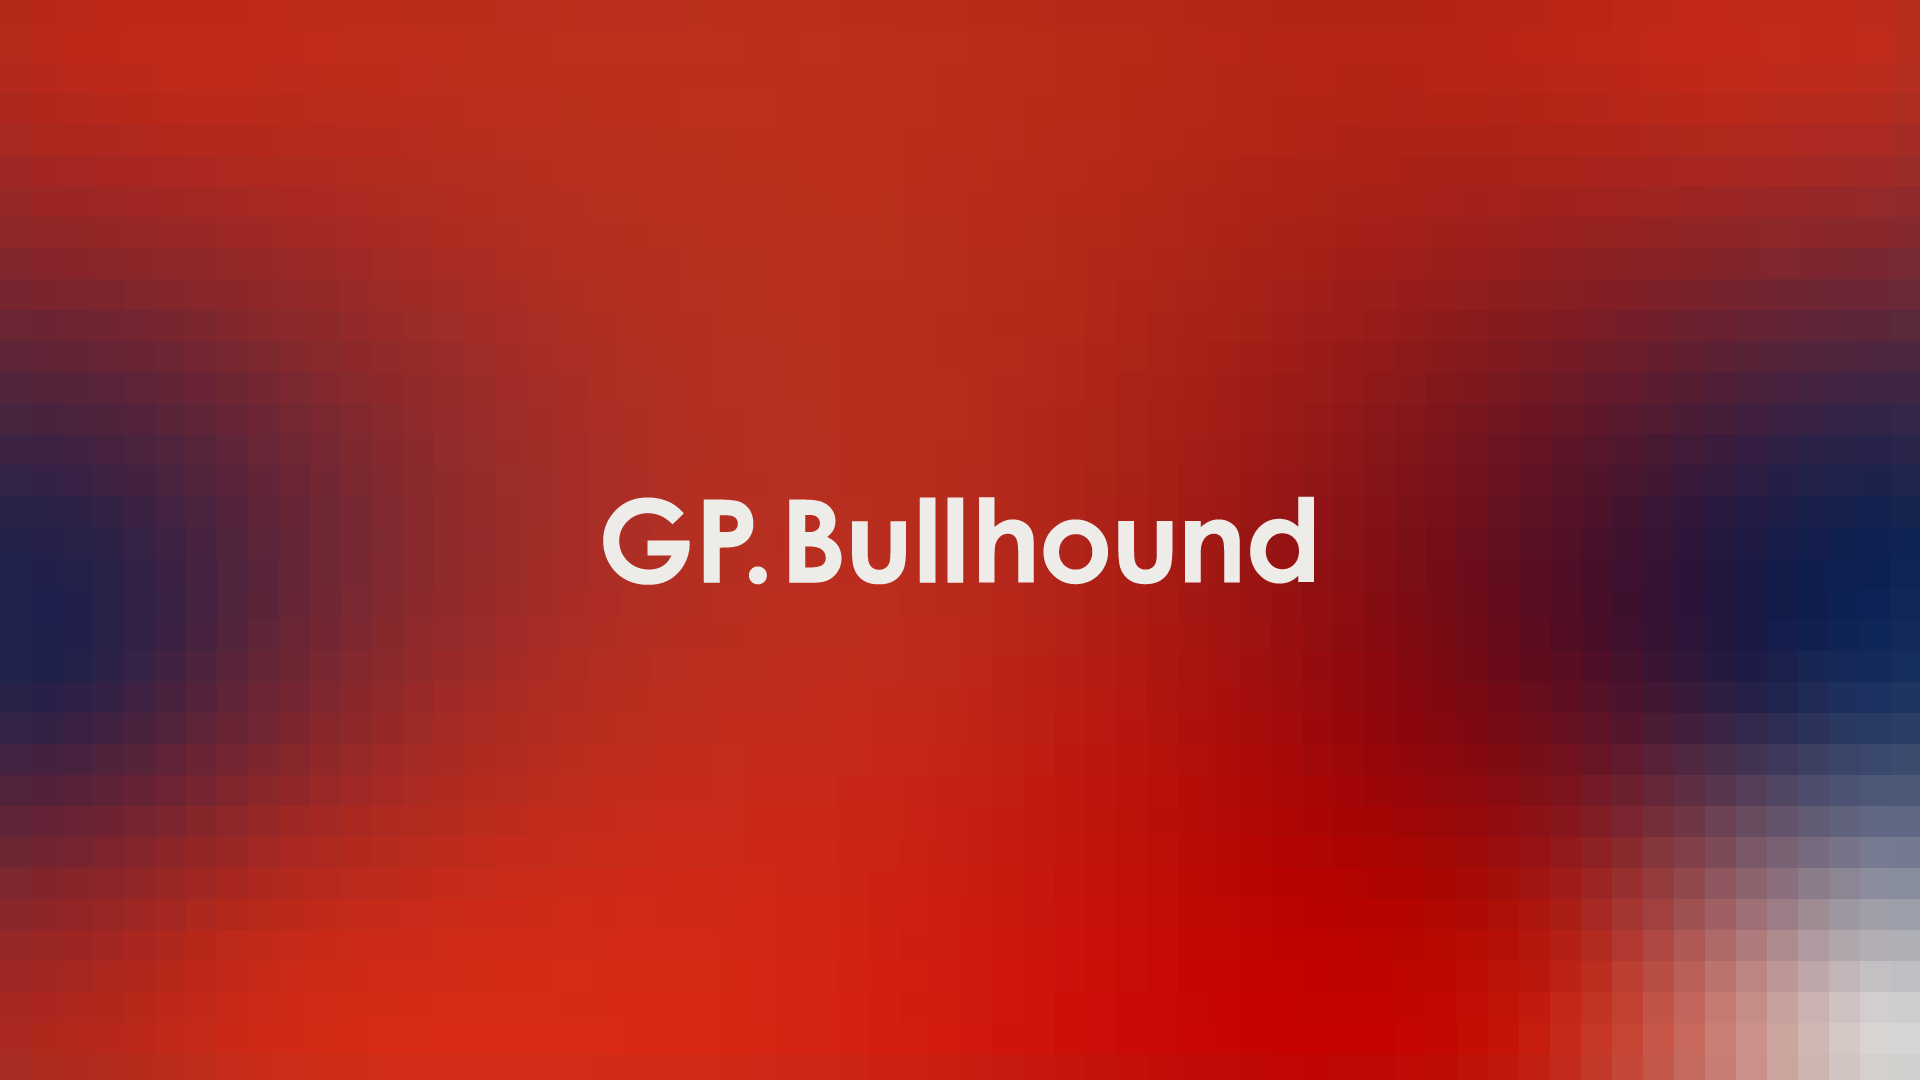 (c) Gpbullhound.com